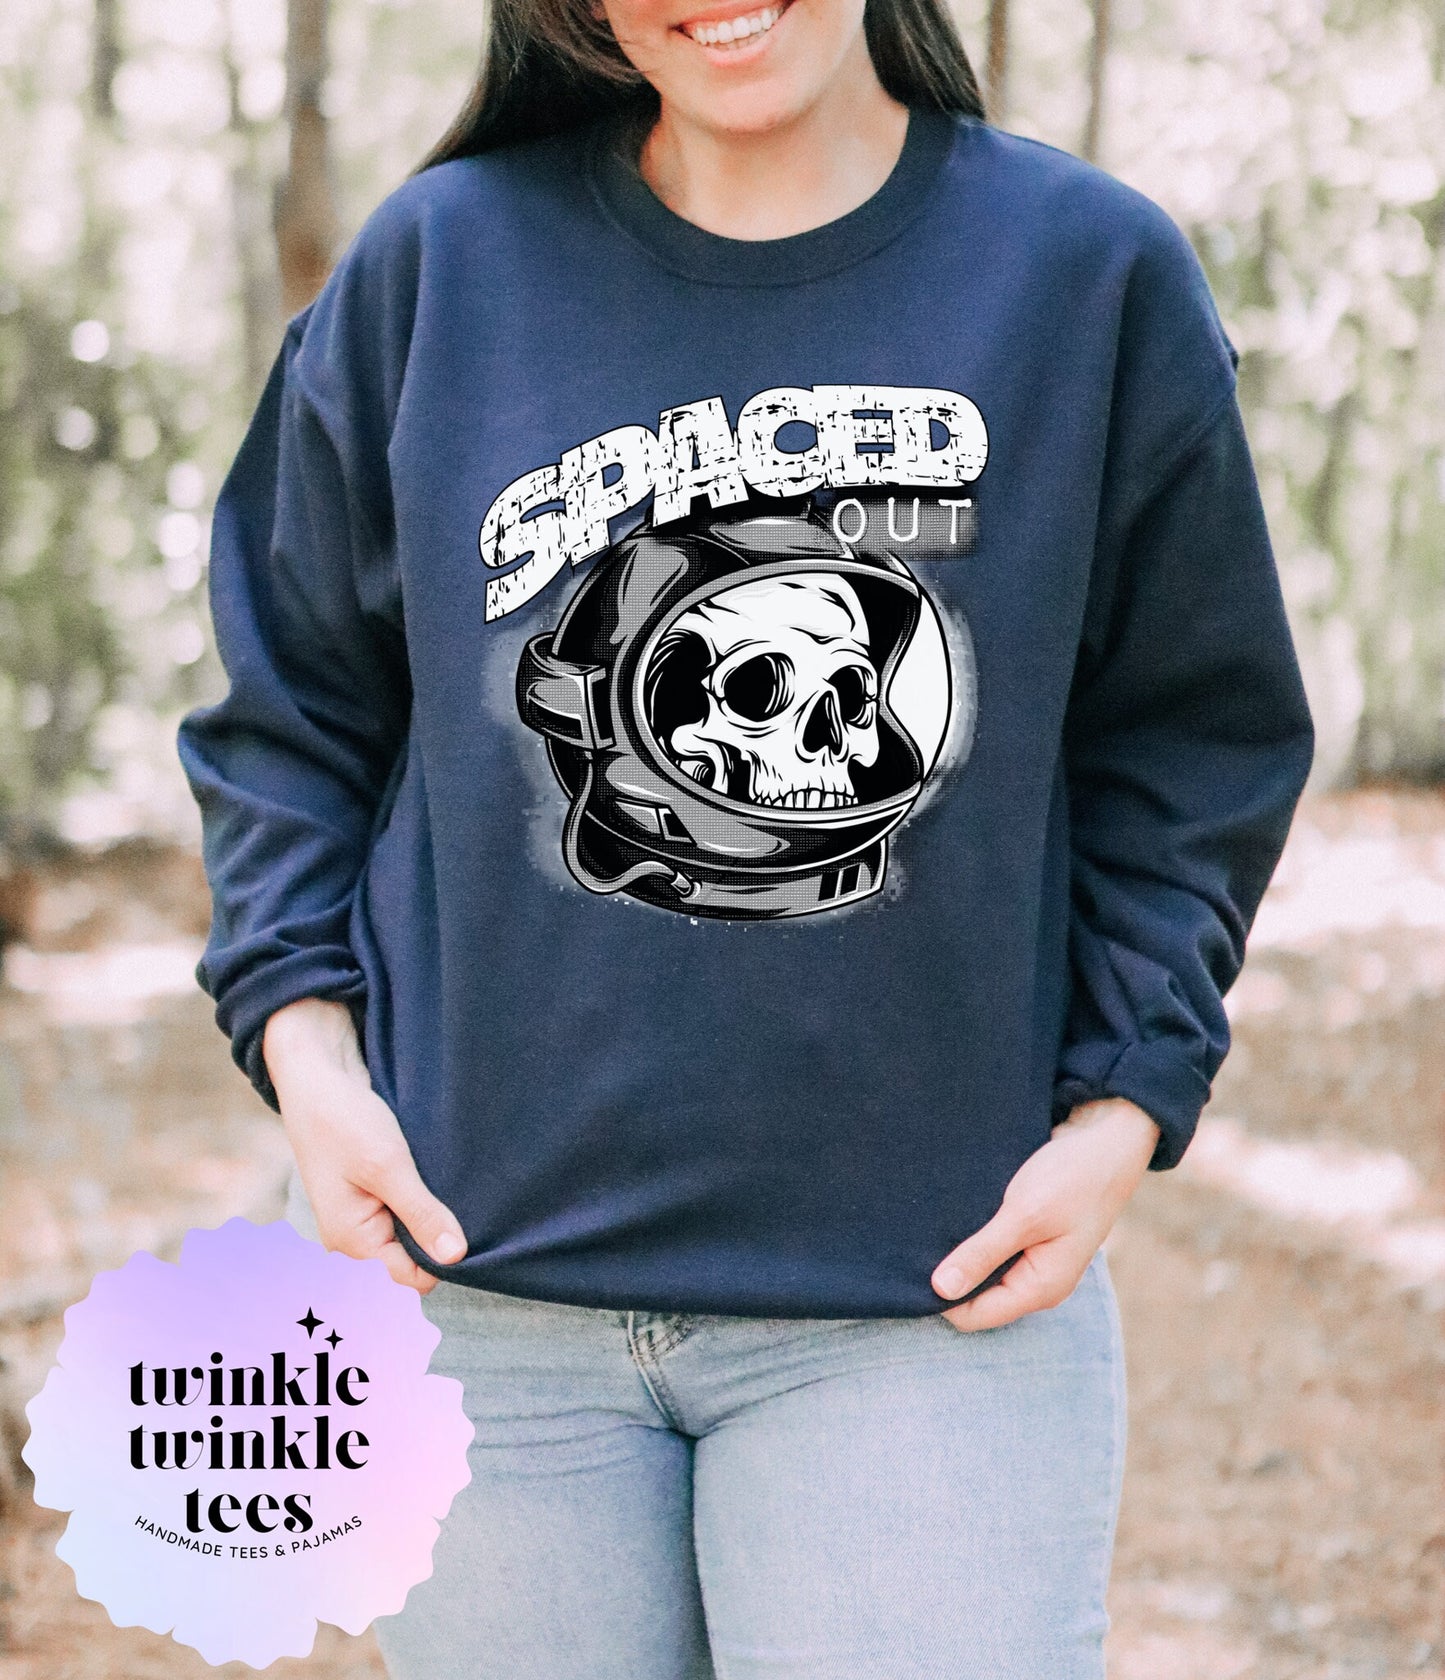 Spaced Out fleece sweatshirt - funny sweatshirt - ADHD sweatshirt - ADD sweatshirt